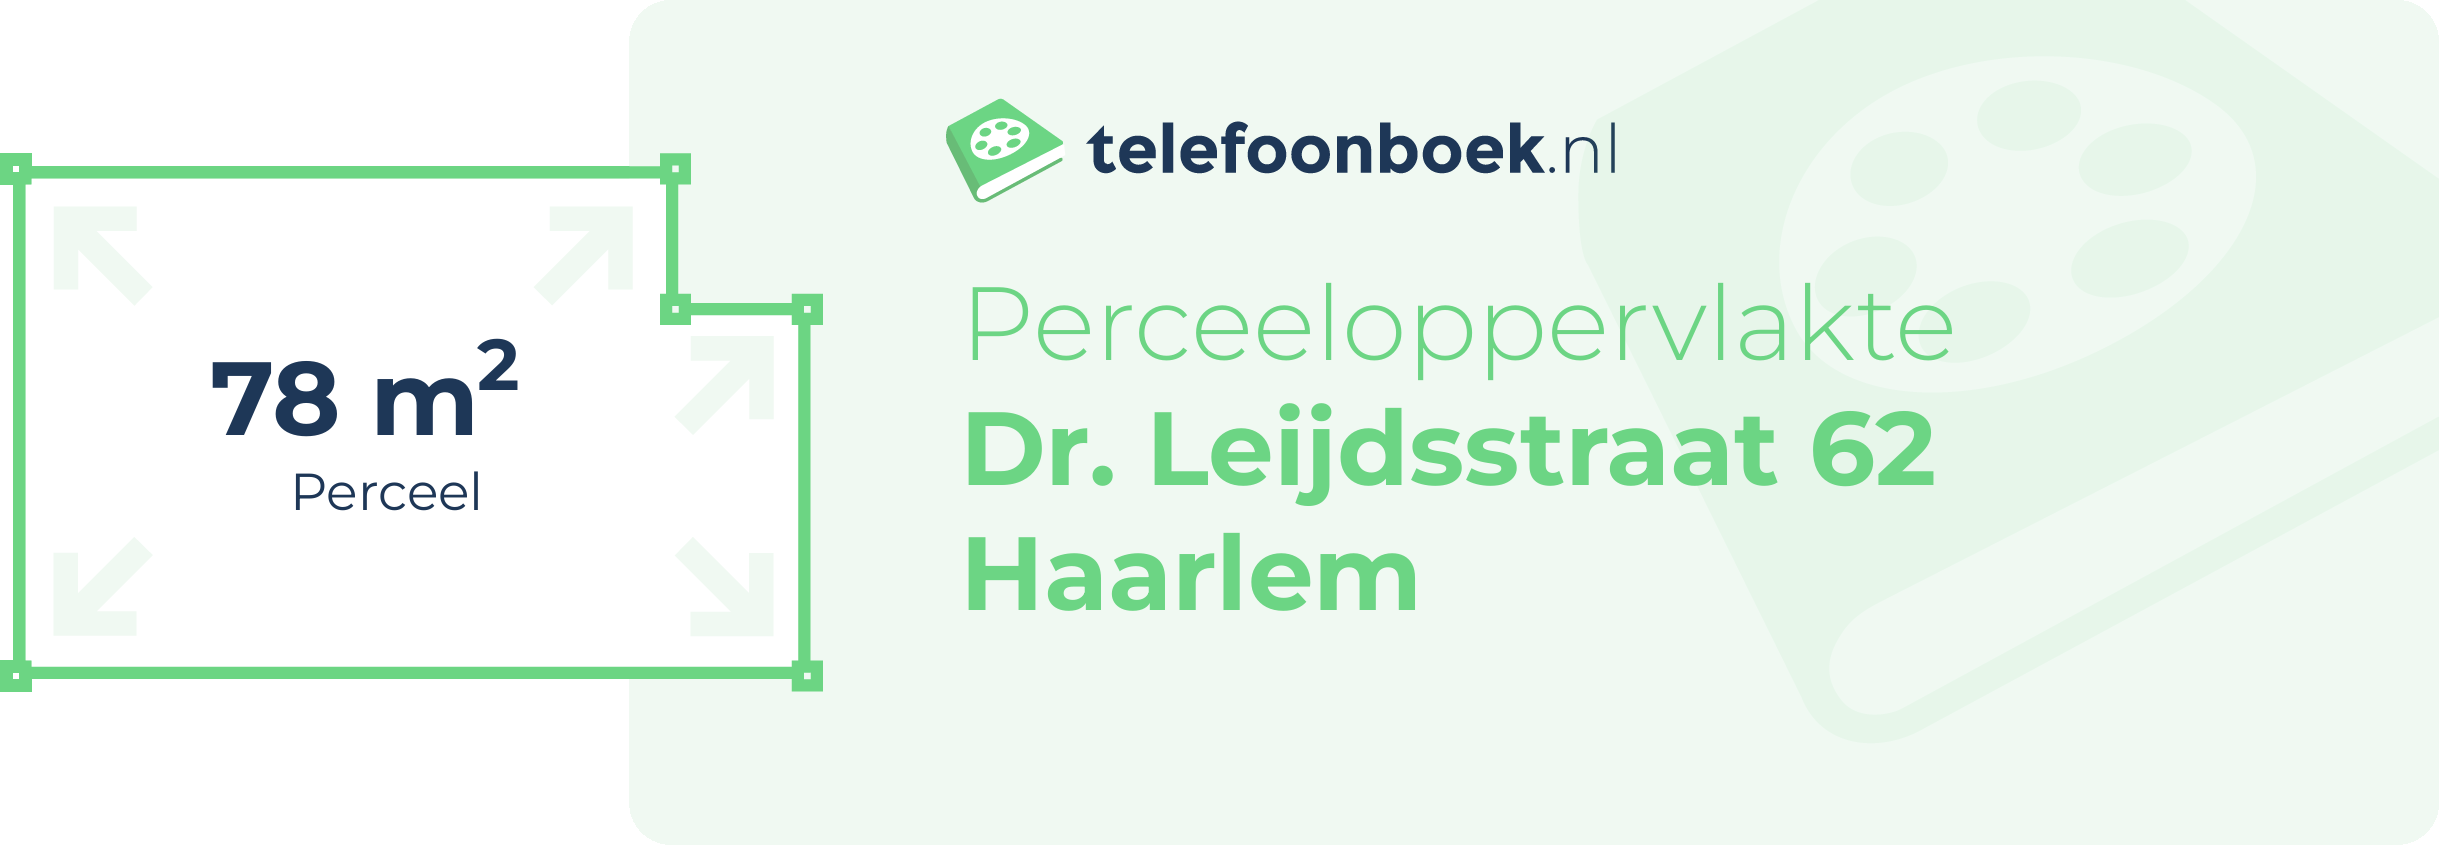 Perceeloppervlakte Dr. Leijdsstraat 62 Haarlem